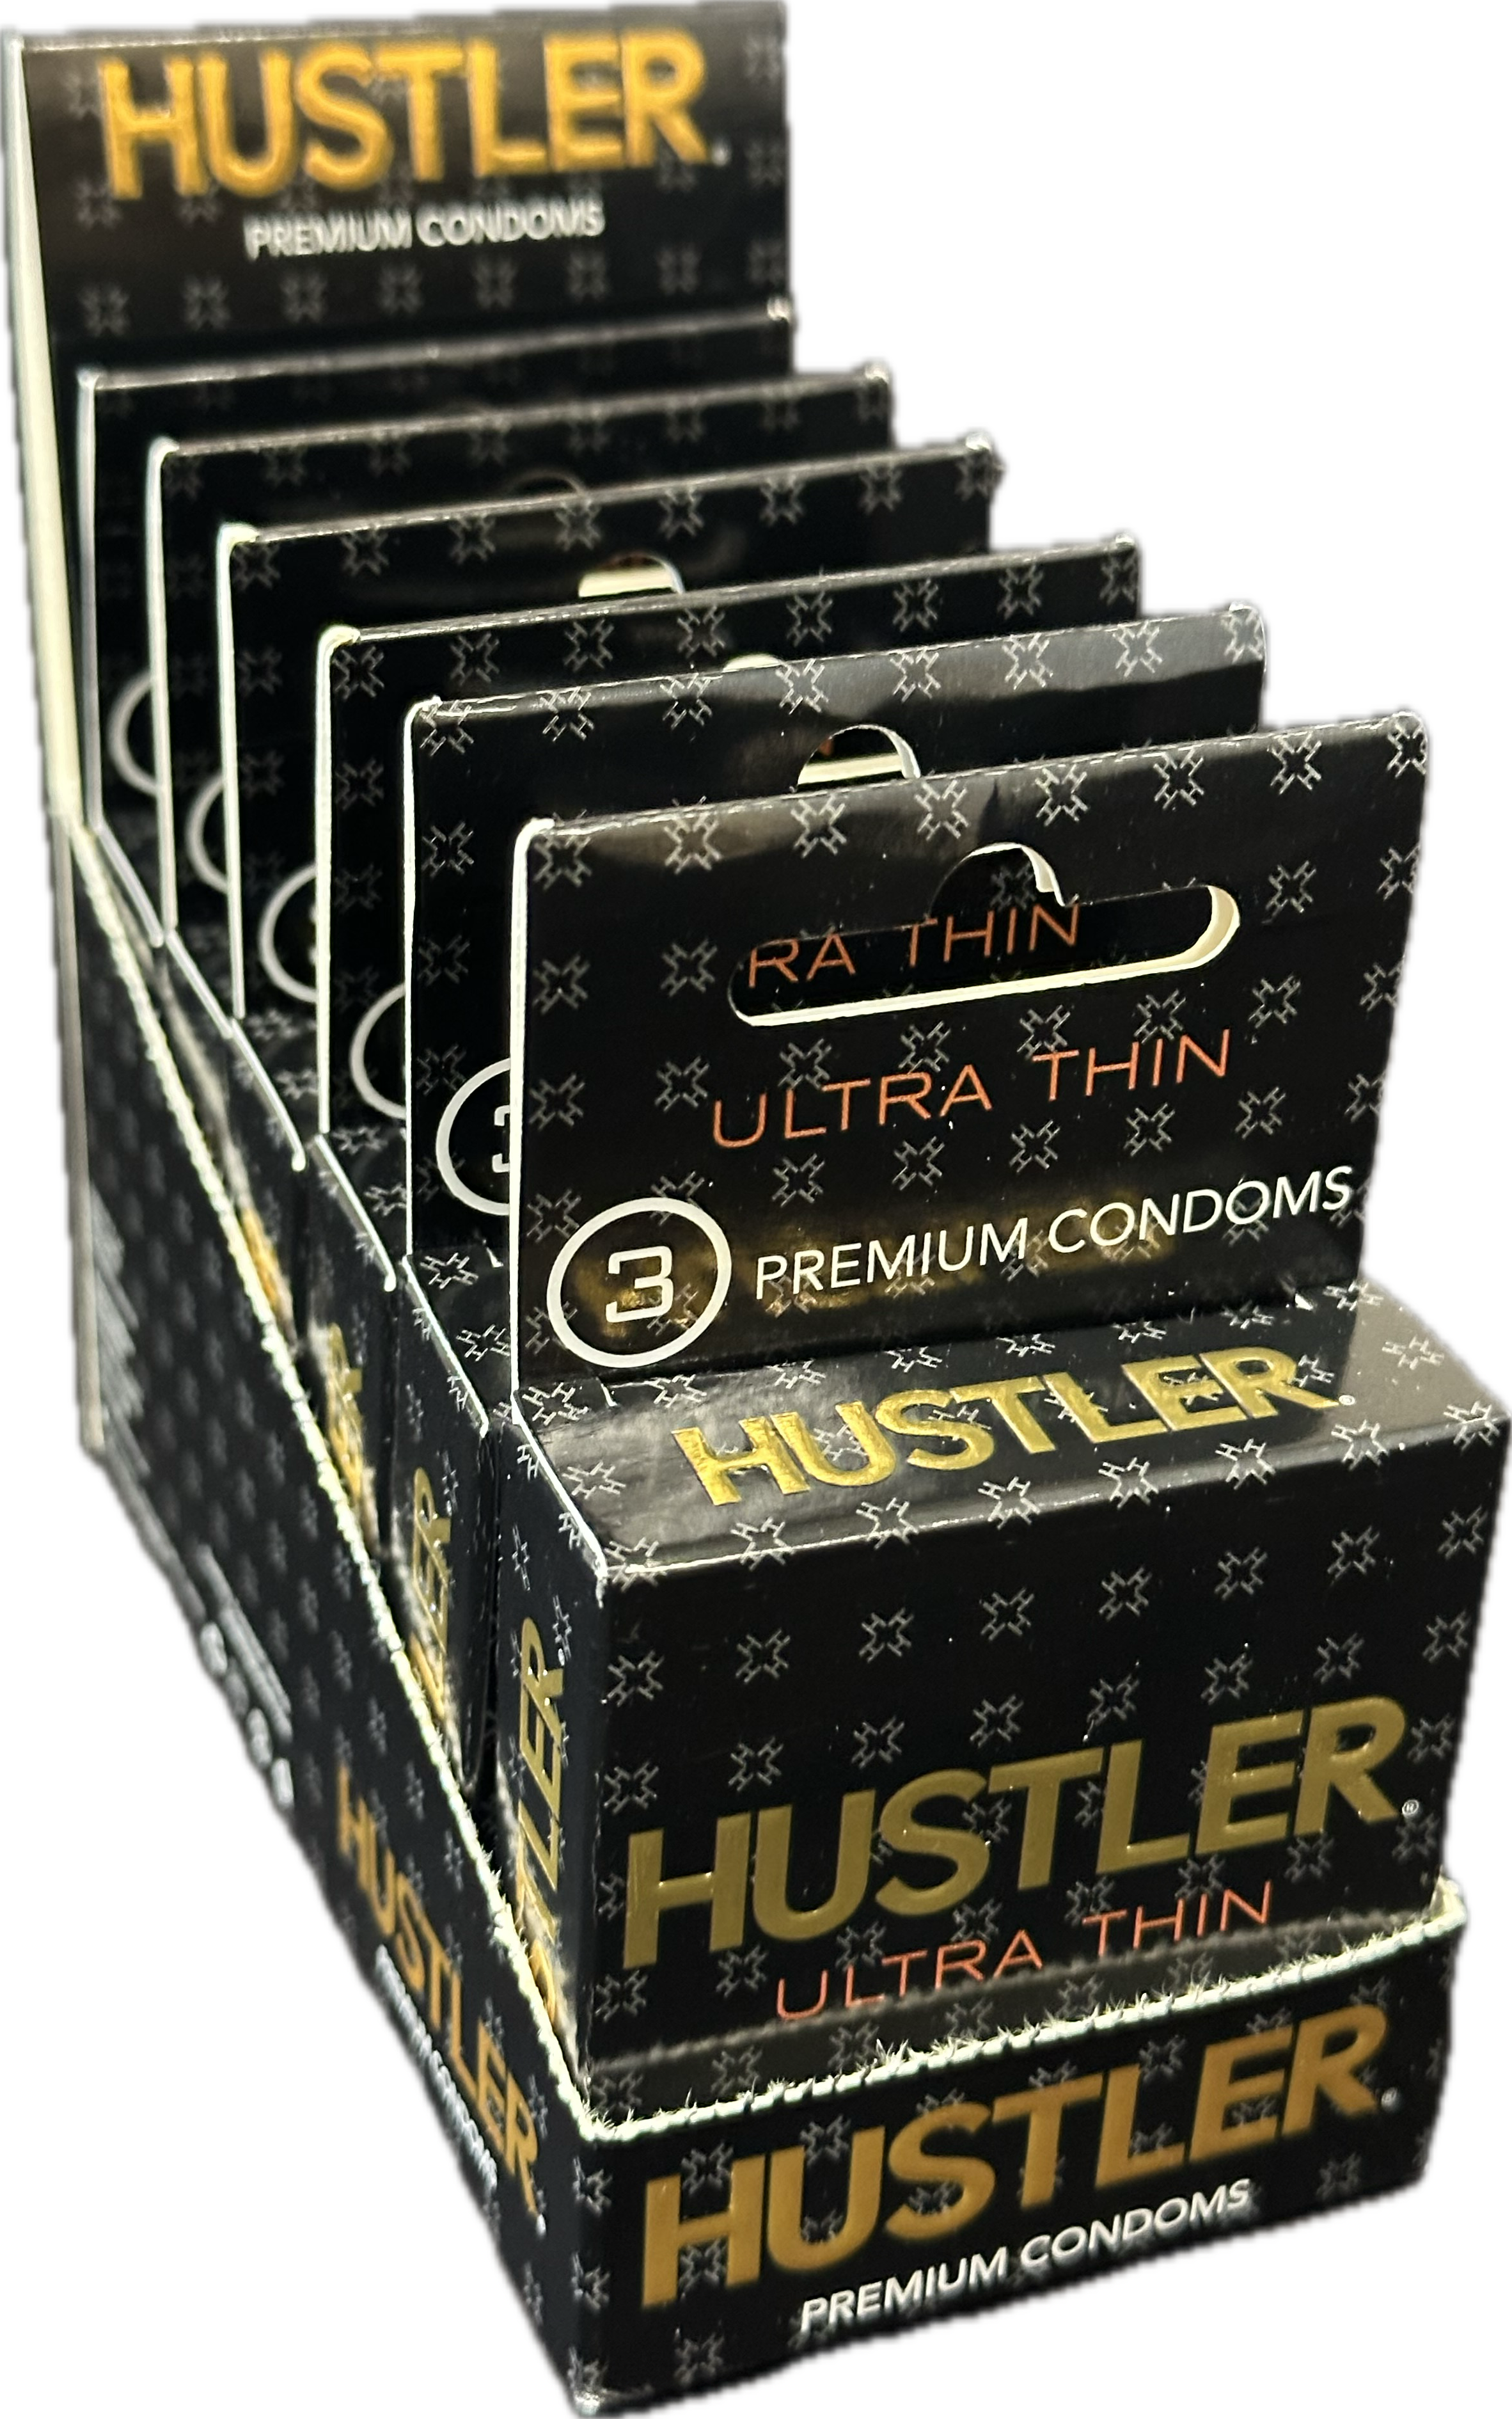 Hustler utlra thin premium condoms 6ct